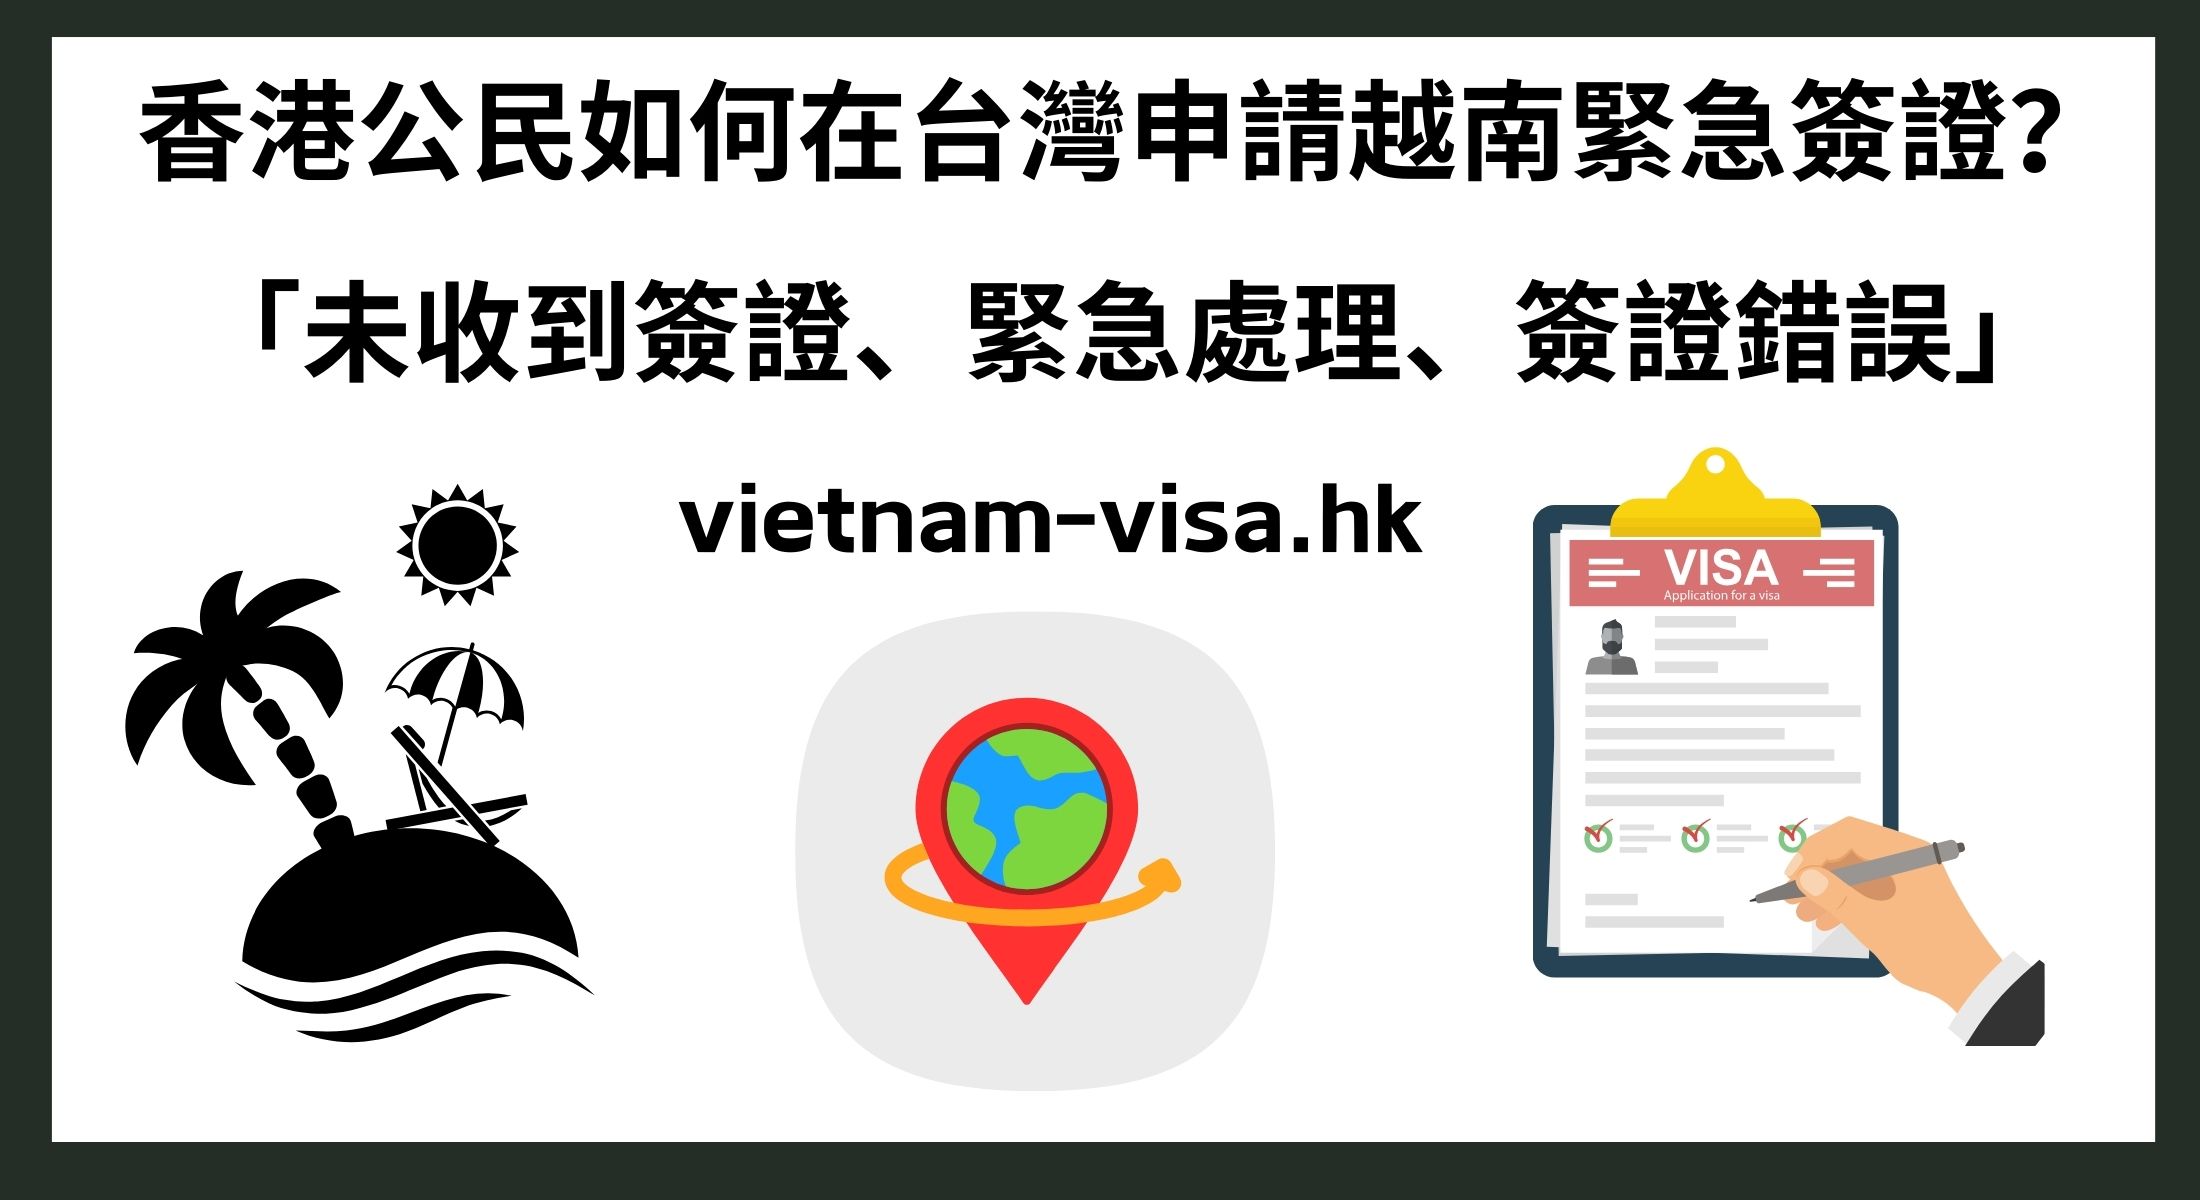 香港公民如何在台灣申請越南緊急簽證？ 「未收到簽證、緊急處理、簽證錯誤」